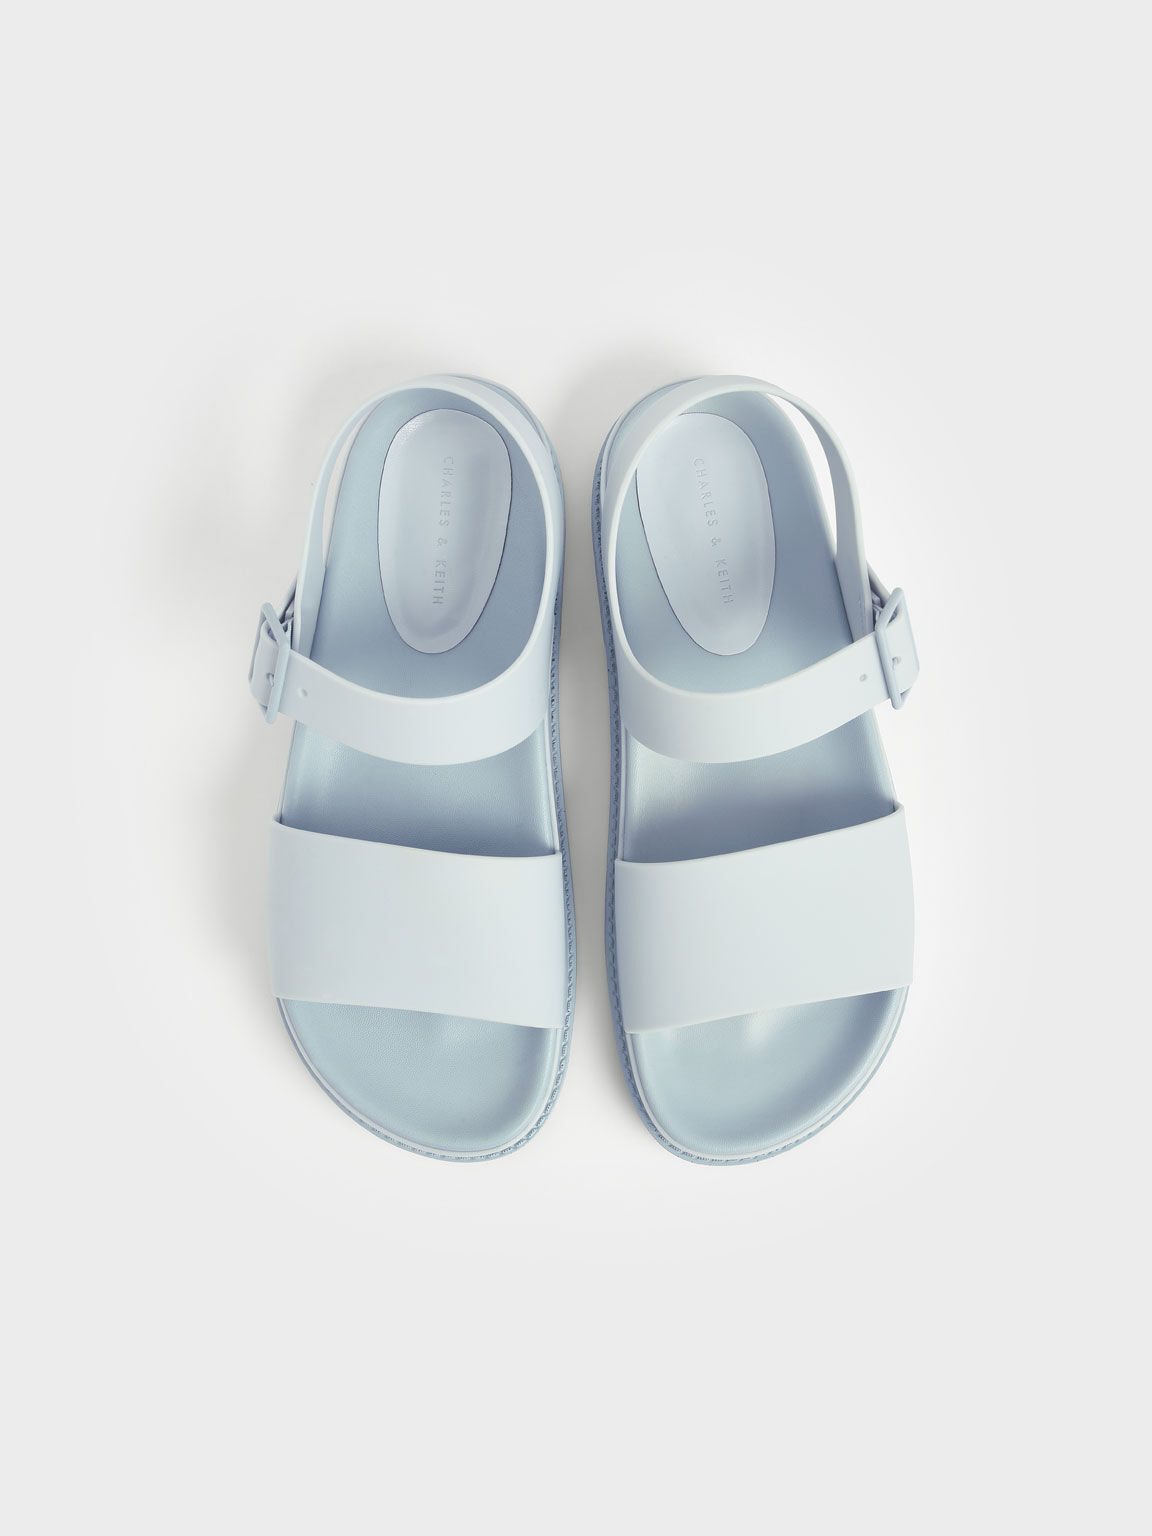 Buckle Strap Flatform Sandals, Light Blue, hi-res